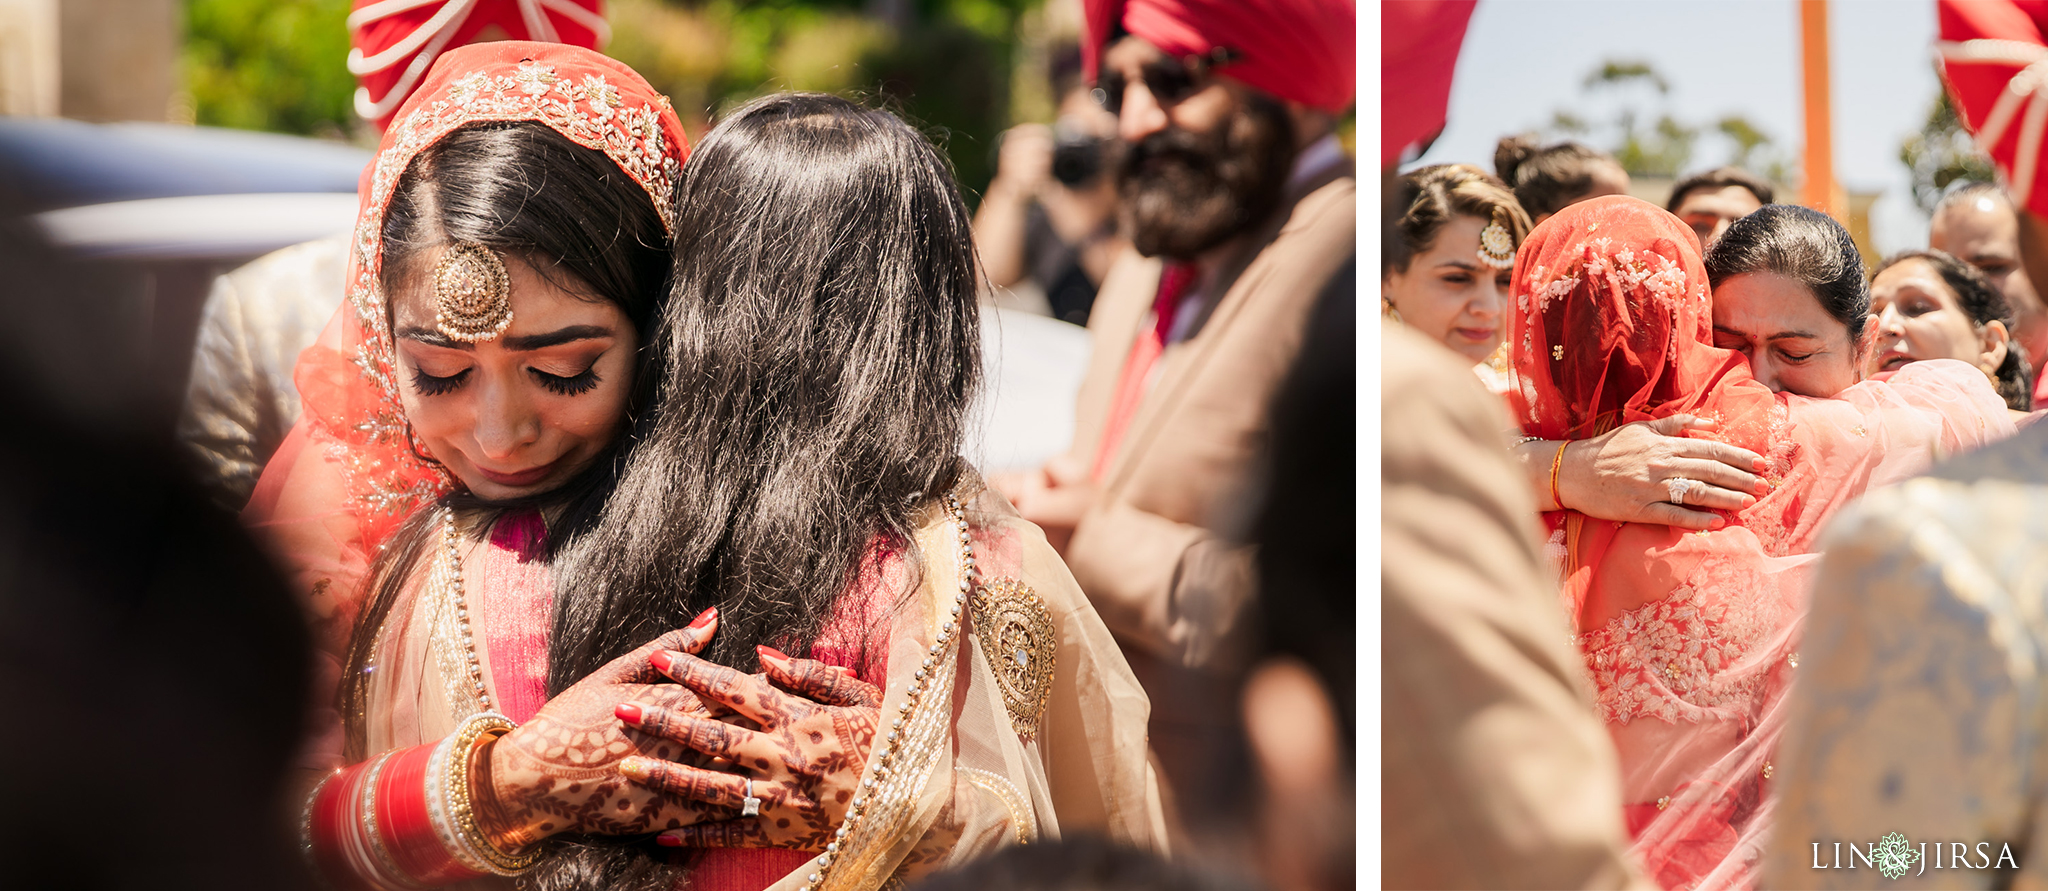 28 Sikh Gurdwara San Jose Punjabi Indian Wedding Photography